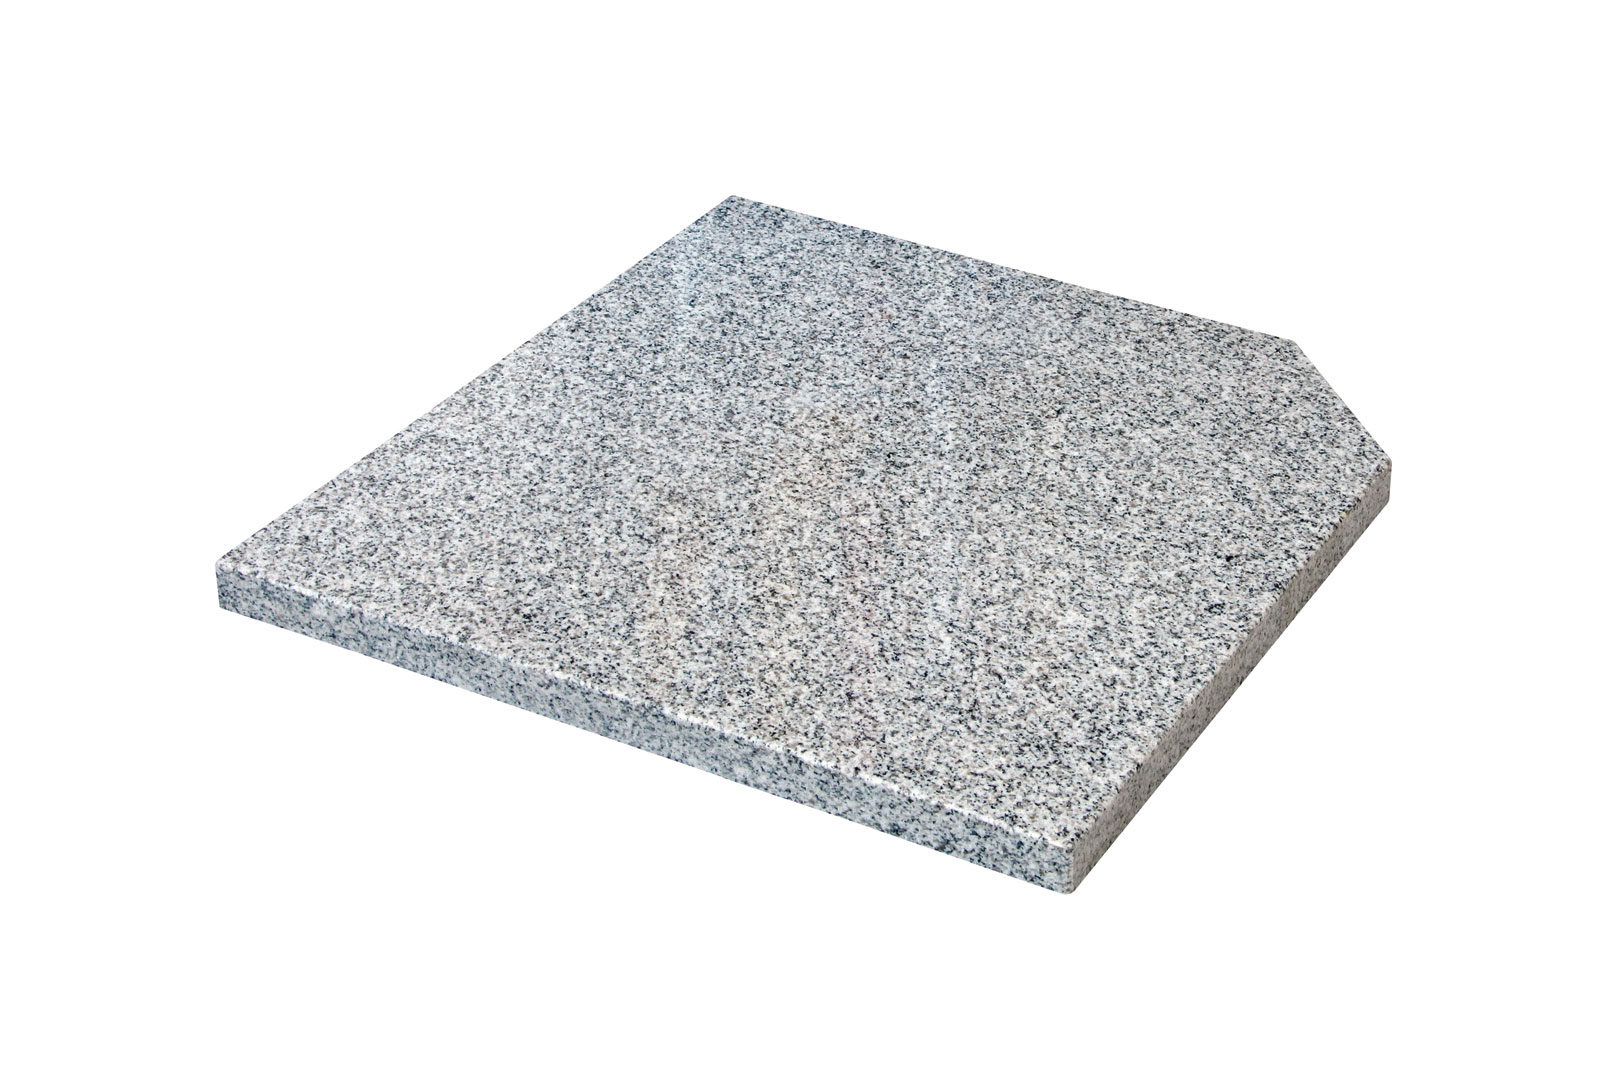 Doppler Design Granit Platte 25kg grau 50x50x4cm